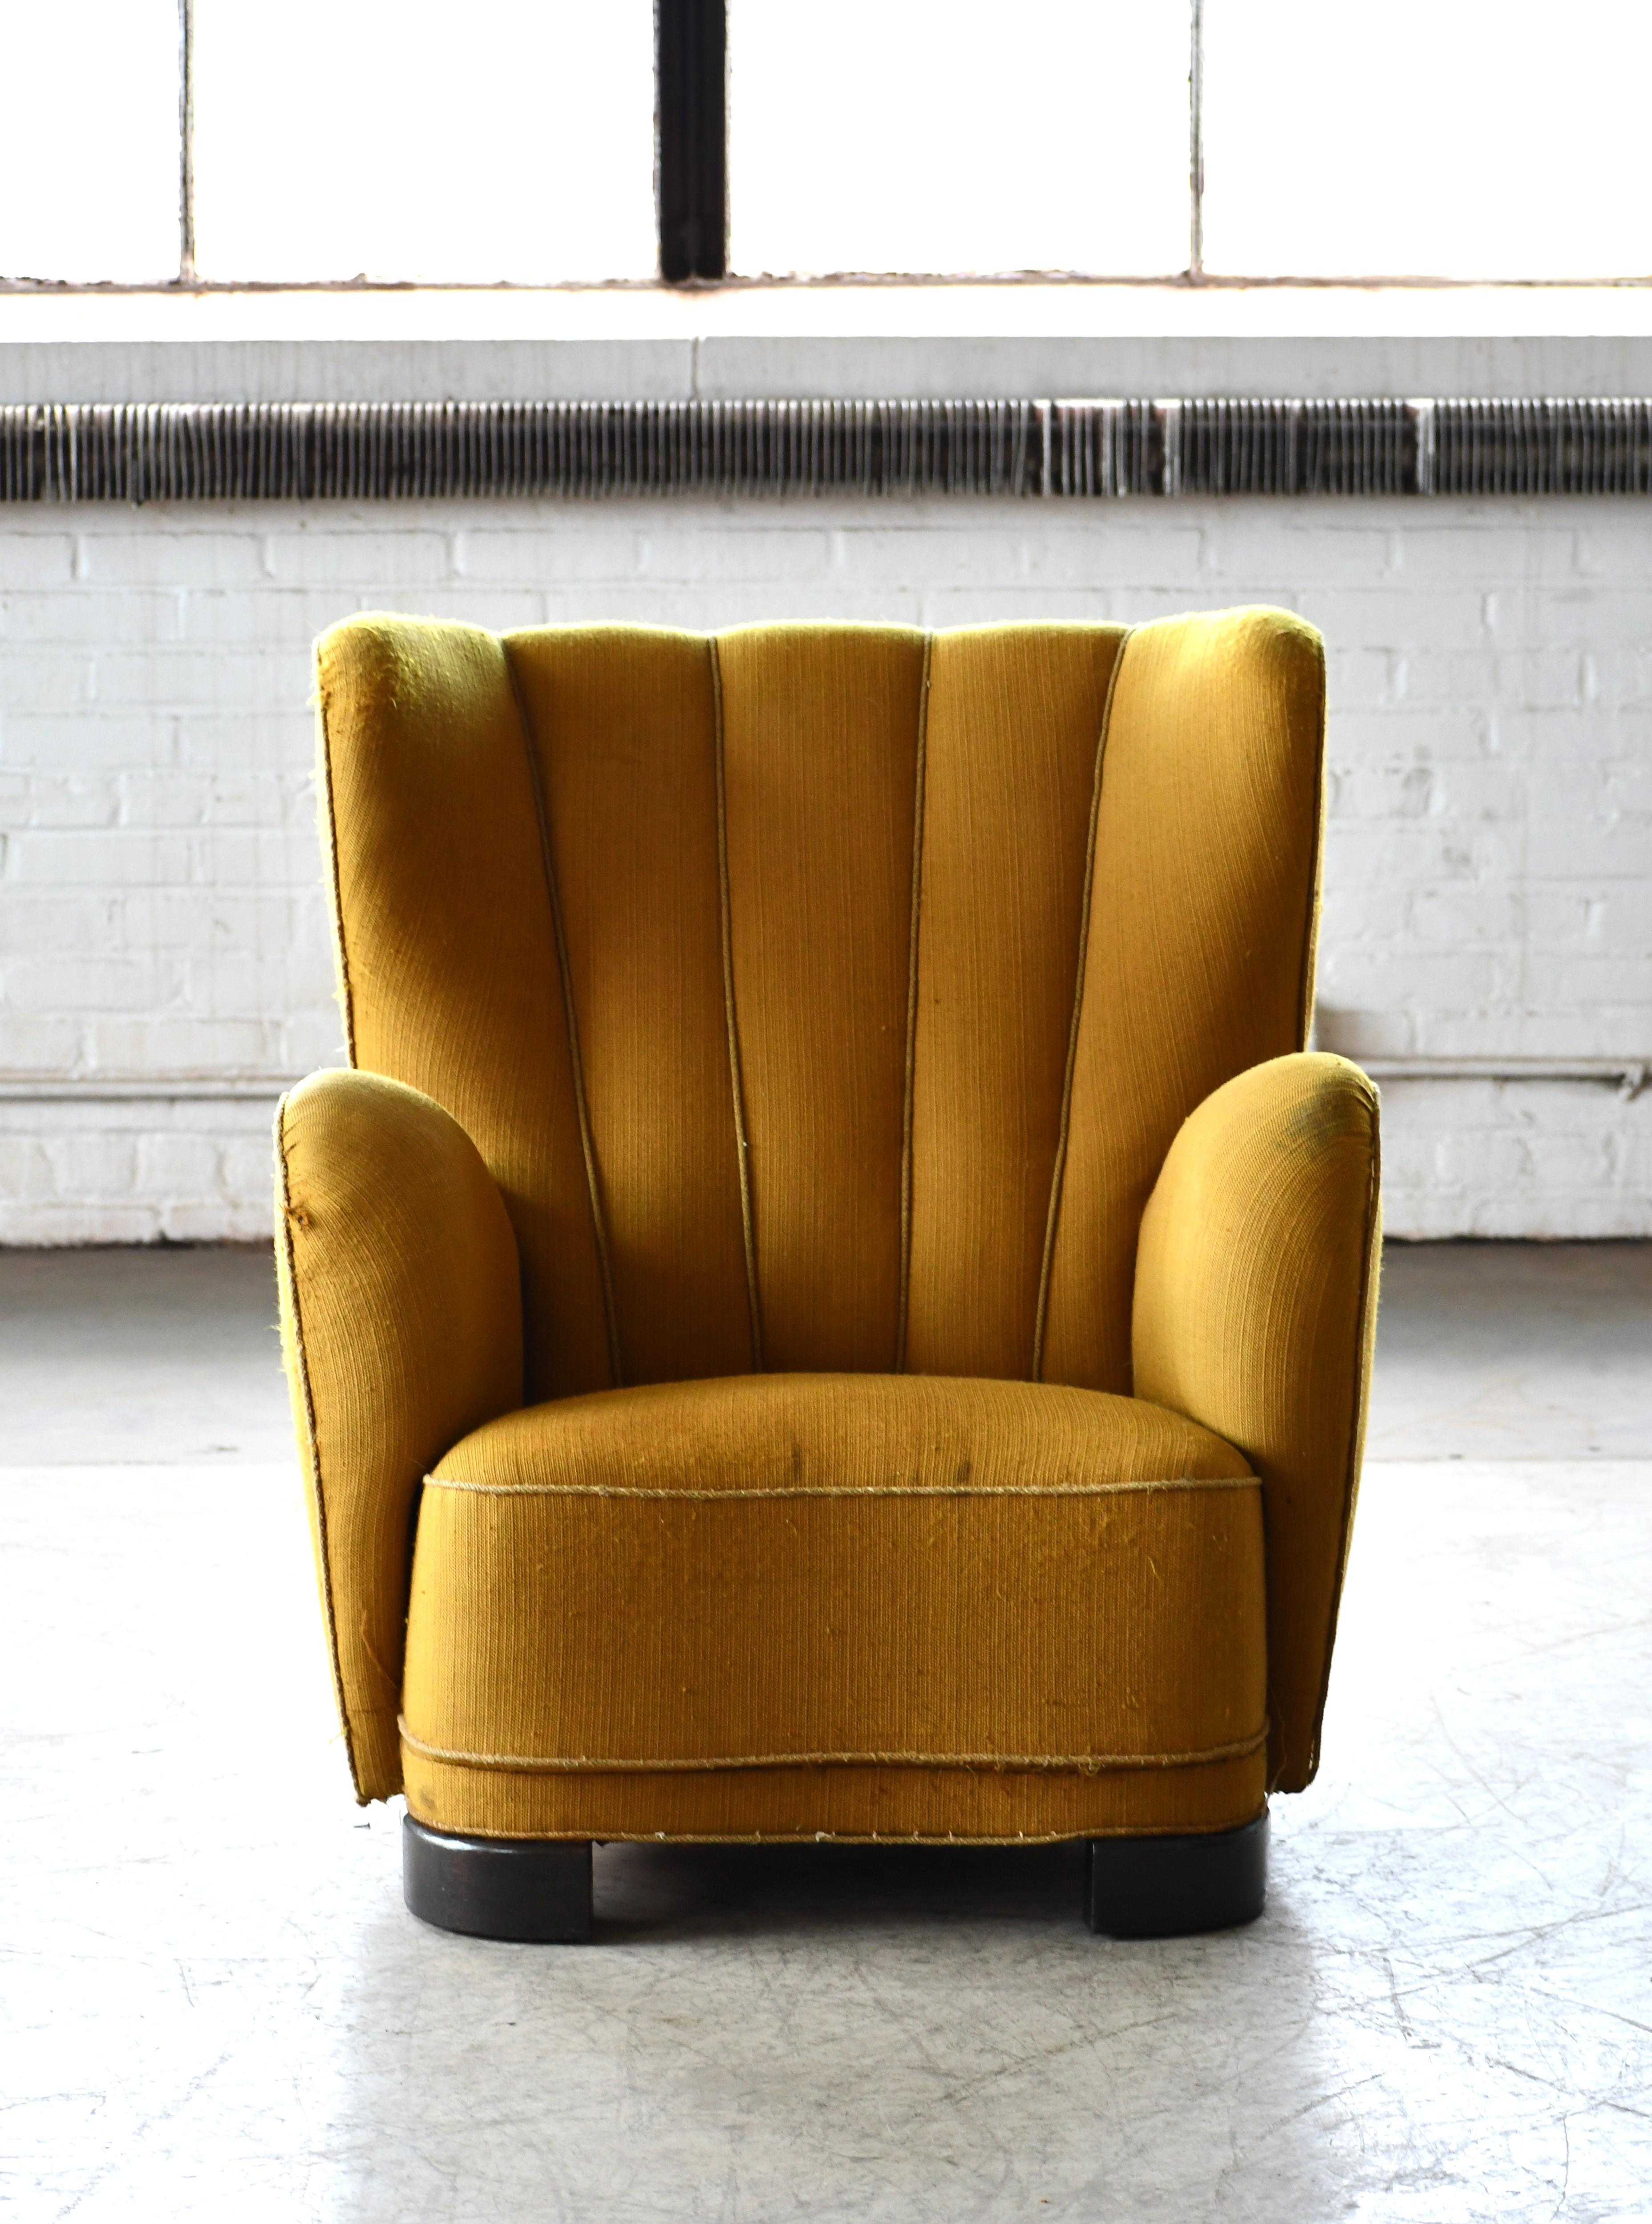 Fritz Hansen zugeschrieben 1940er Jahre dänischen Highback-Sessel in Wolle. Erhabener Hochlehner-Sessel mit kanalisierter Rückenlehne, hergestellt in Dänemark in den späten 1930er oder frühen 1940er Jahren. Dieses Stuhlmodell wird von Zeit zu Zeit